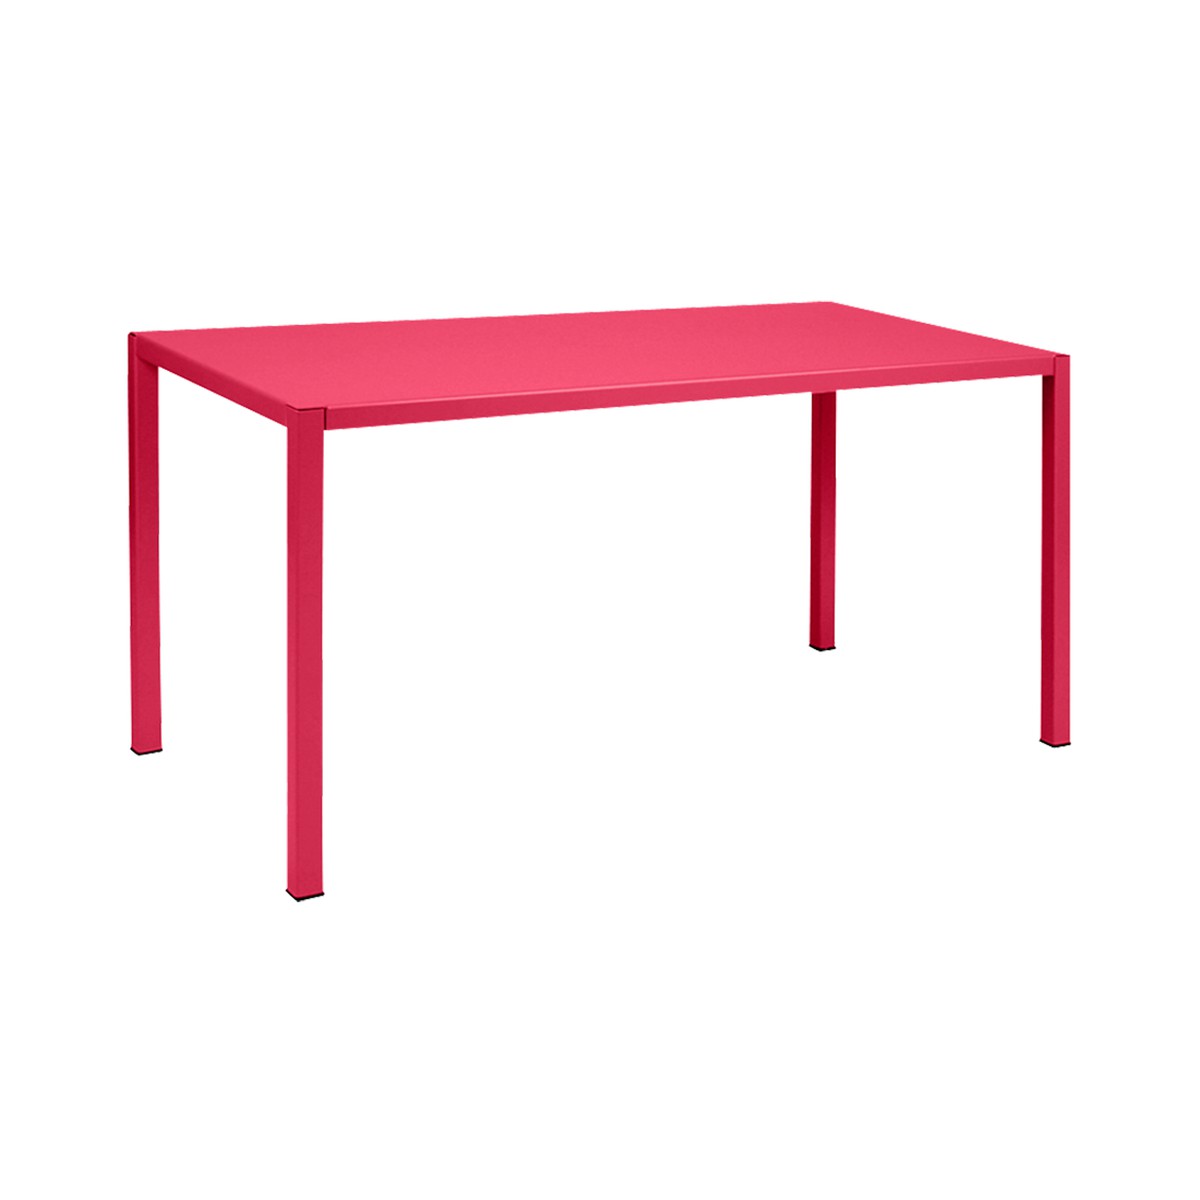 Fermob Inside Out Table Inside Out rectangulaire Rouge rose bonbon L 140 x l 70 x H74cm